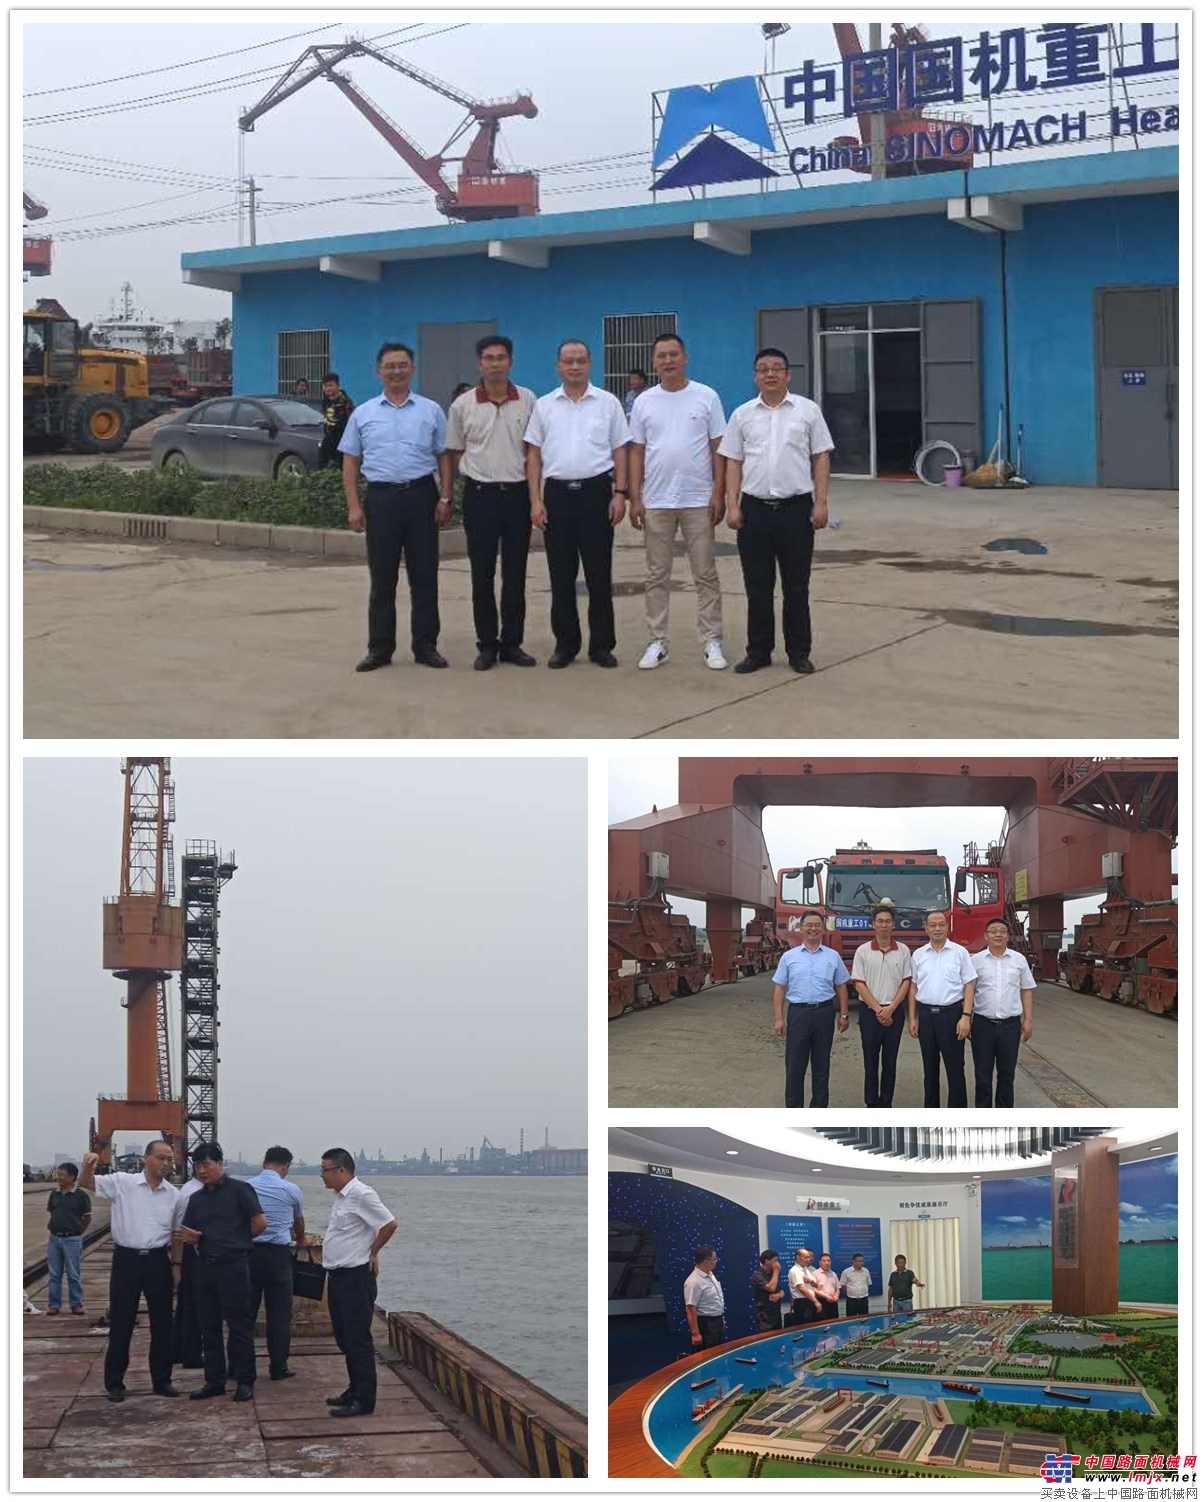 吳培國董事長率隊走訪國機重工再製造公司相關合作港口